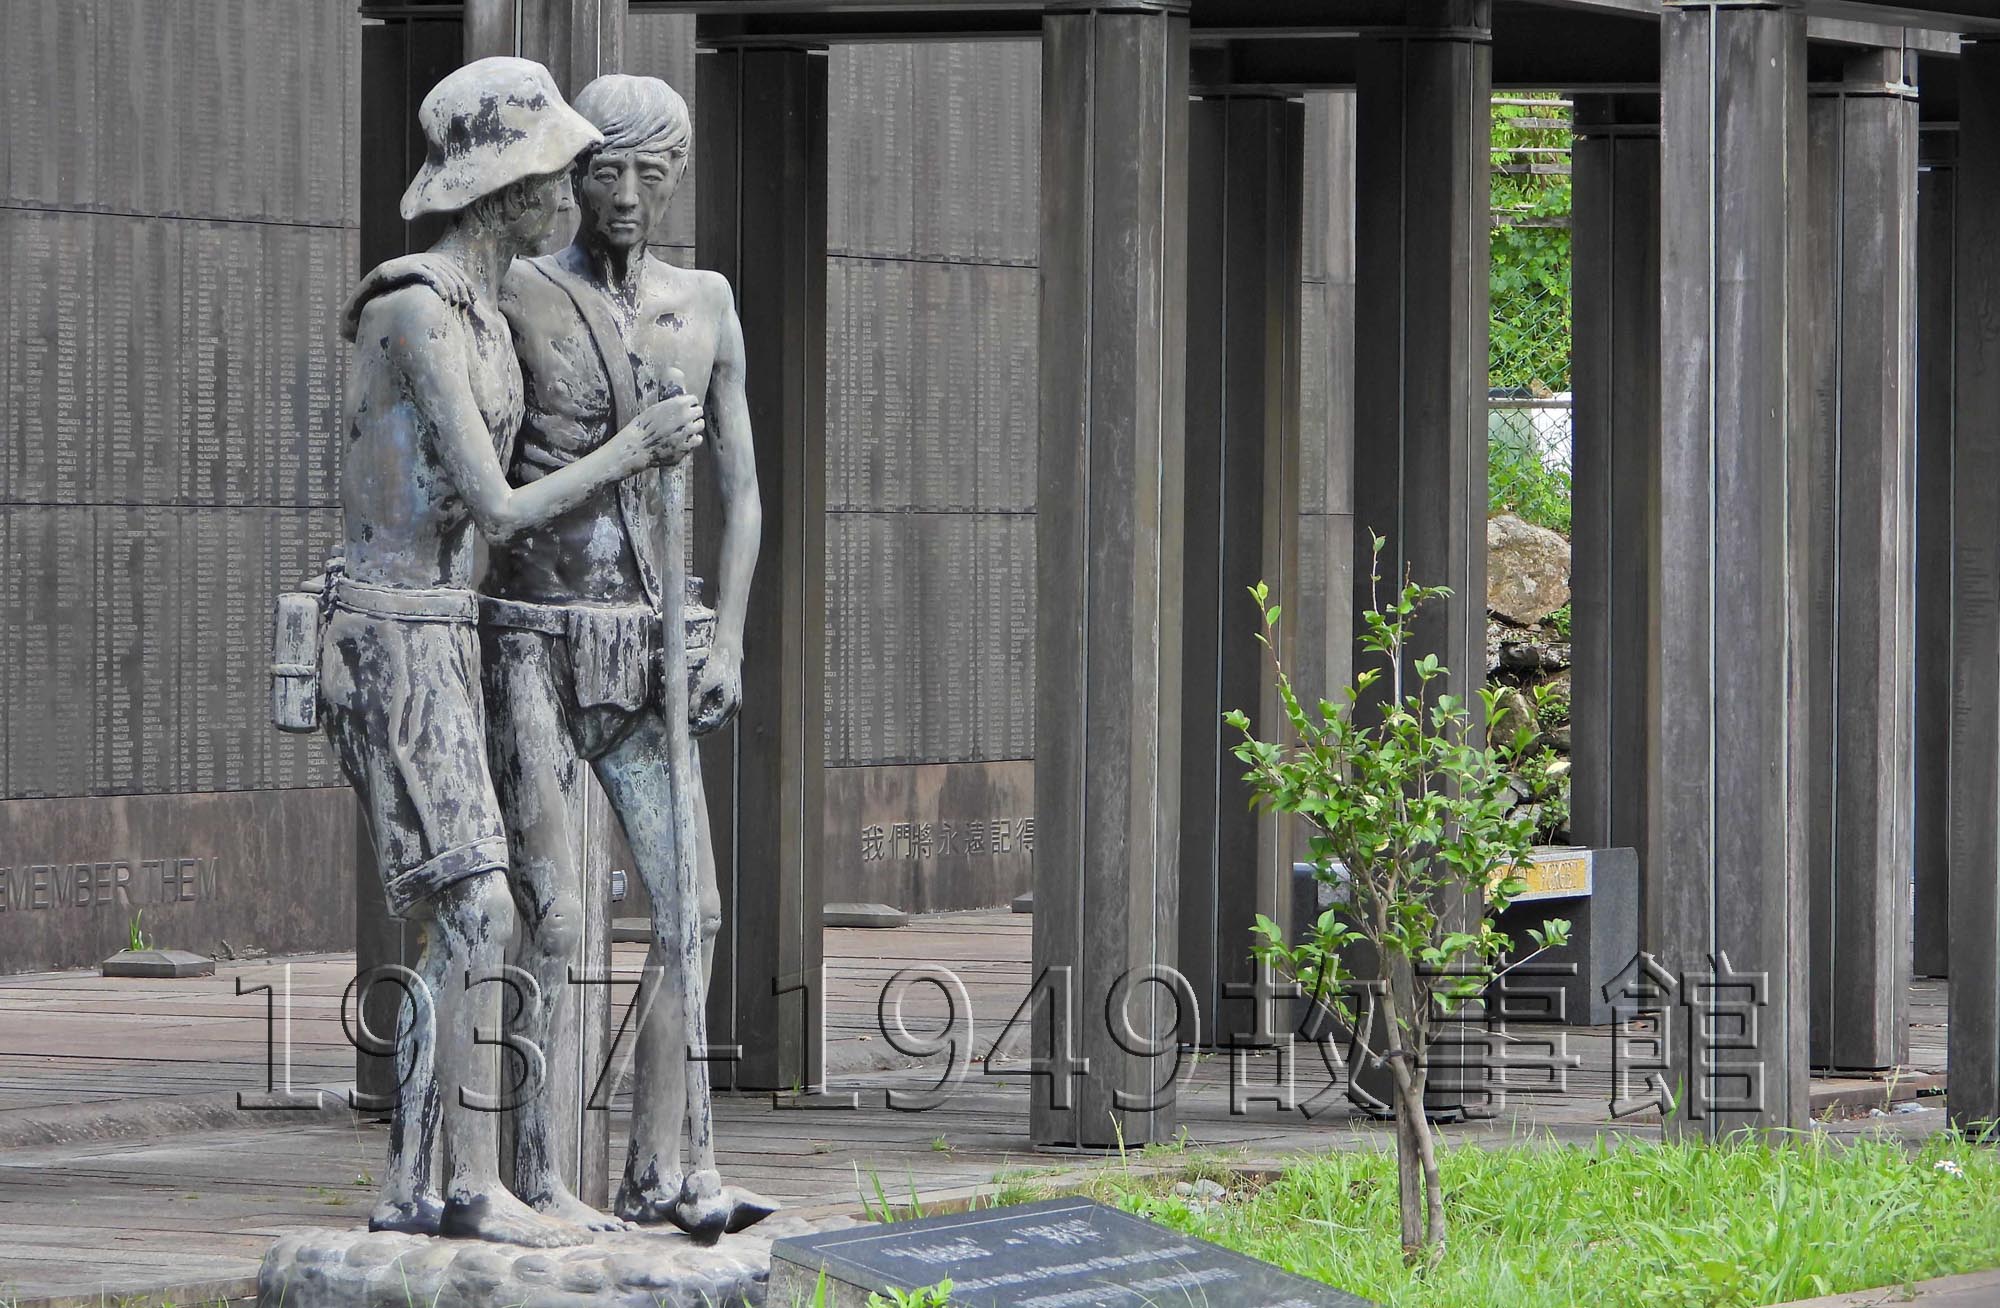 金瓜石戰俘營遺址暨國際終戰和平紀念園區